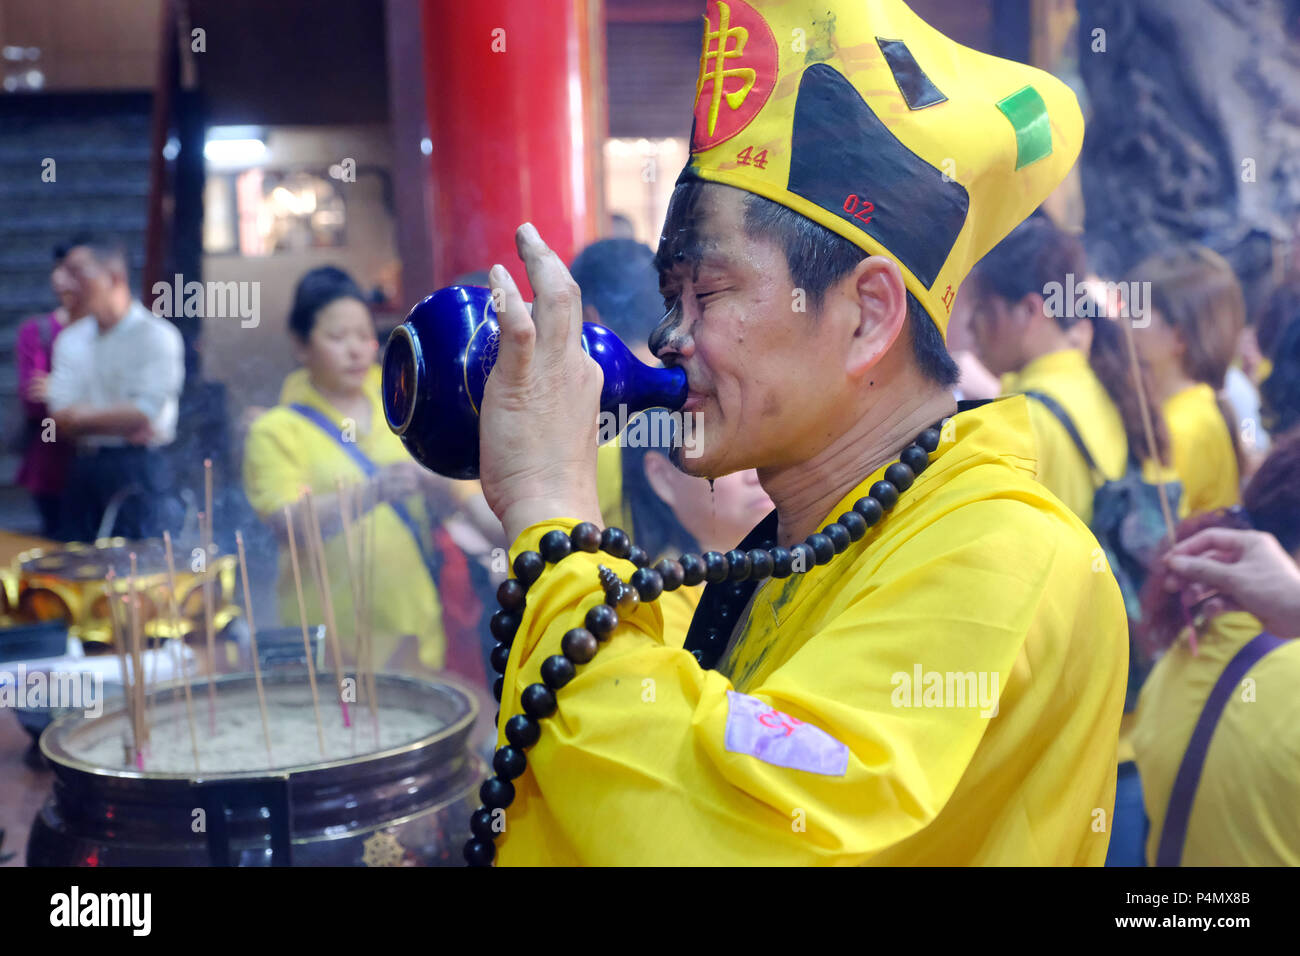 Le moine bouddhiste de boire du vin de riz lors d'une cérémonie au temple de Longyin Fanlu Canton, Taiwan - Buddhistischer Mönch bei einer Zeremonie Longyin im Tempel dans Fanlu Canton, Taiwan Banque D'Images